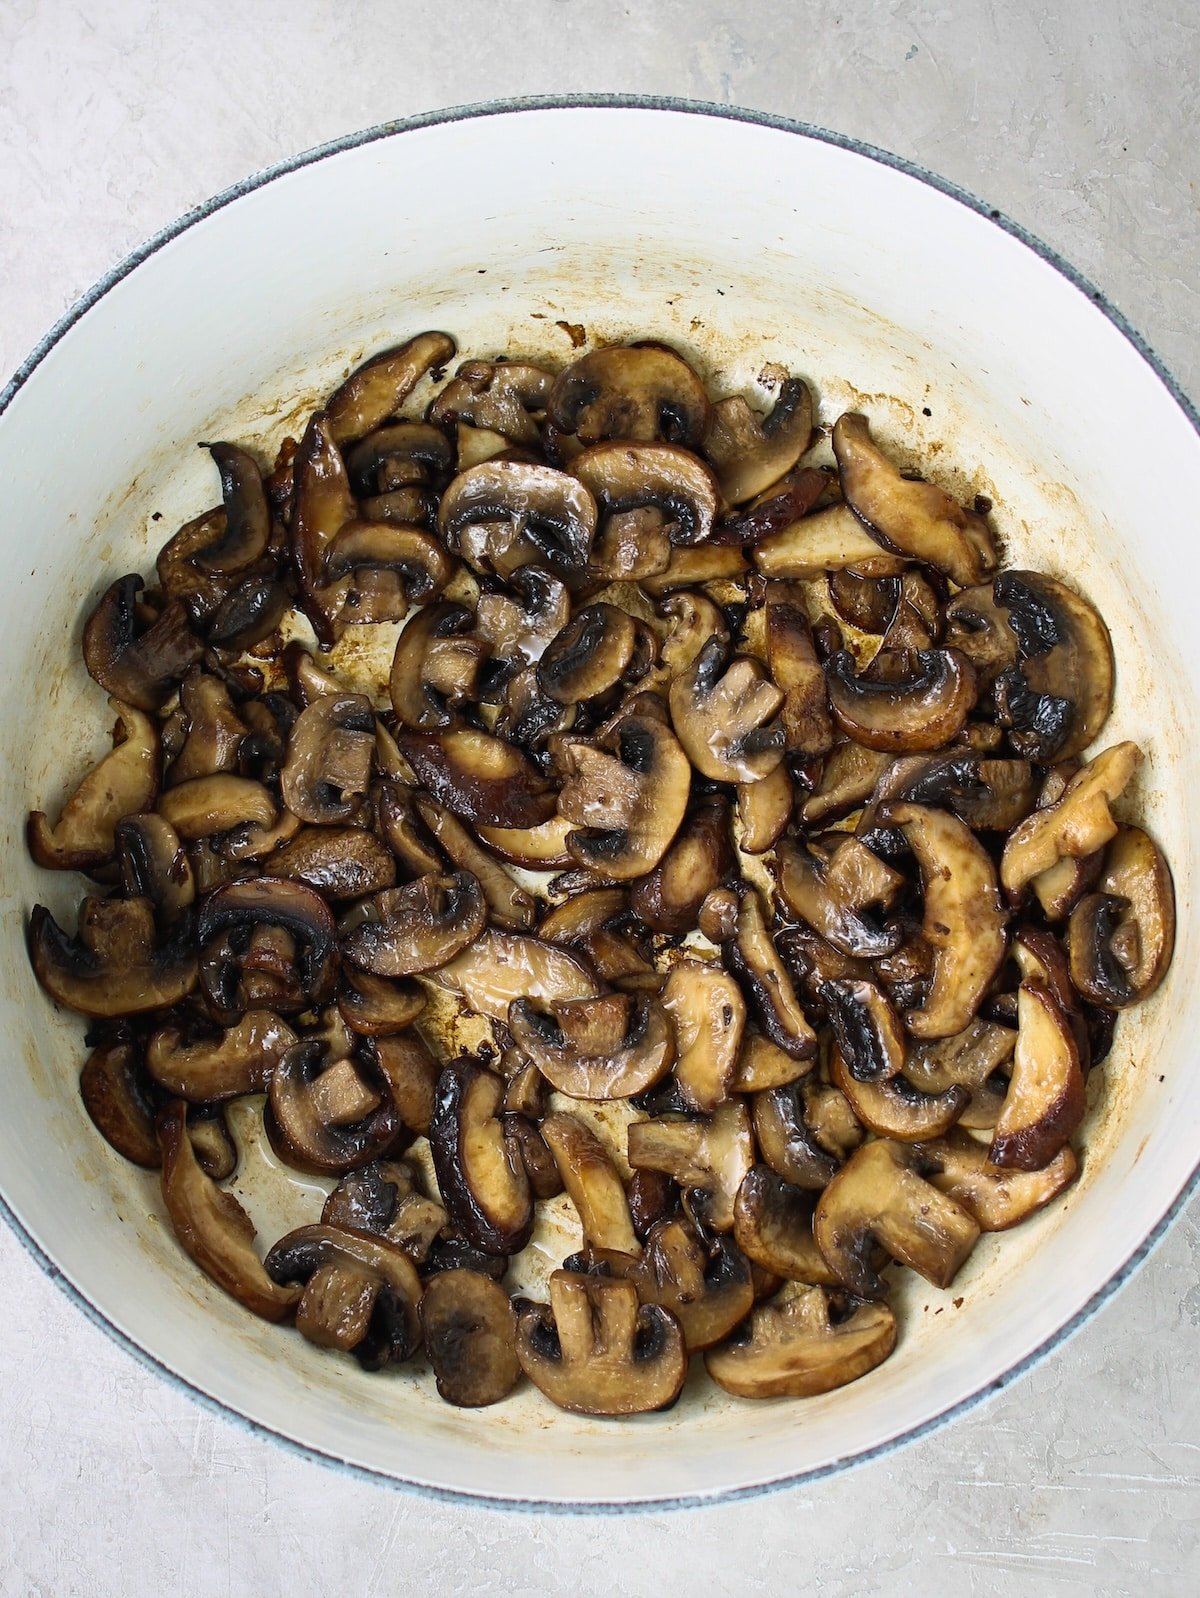 Mushrooms sautéing in a pot.